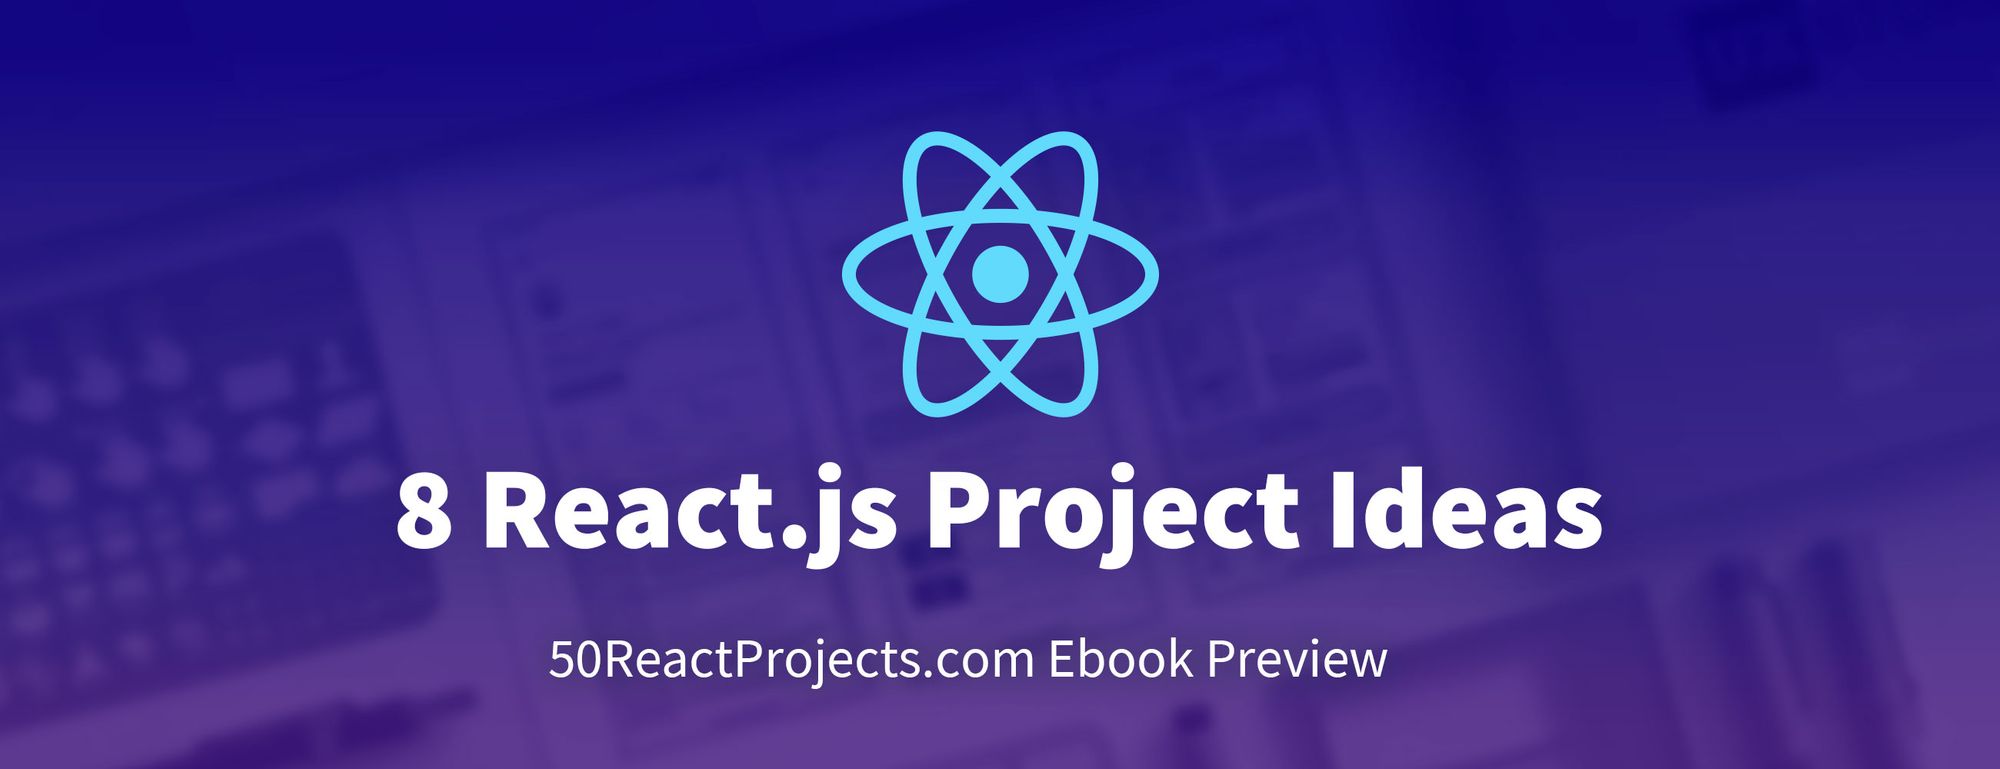 8 ideias de projeto com o React.js para você começar a aprender fazendo